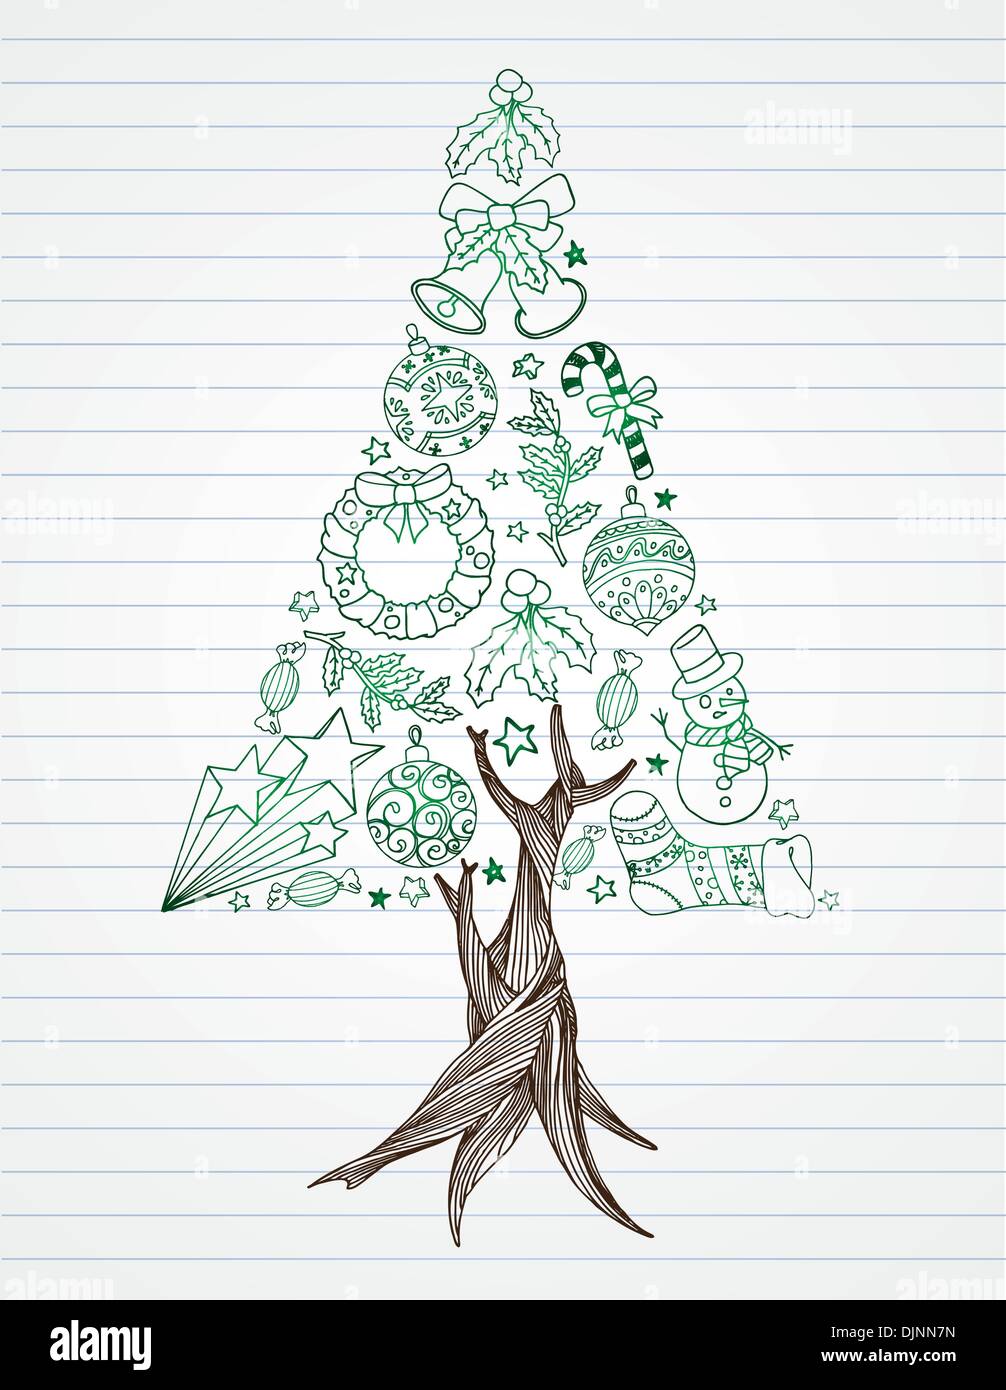 Kiefer Baum Weihnachten Kritzeleien auf Liniertes Papier aus. Stock Vektor